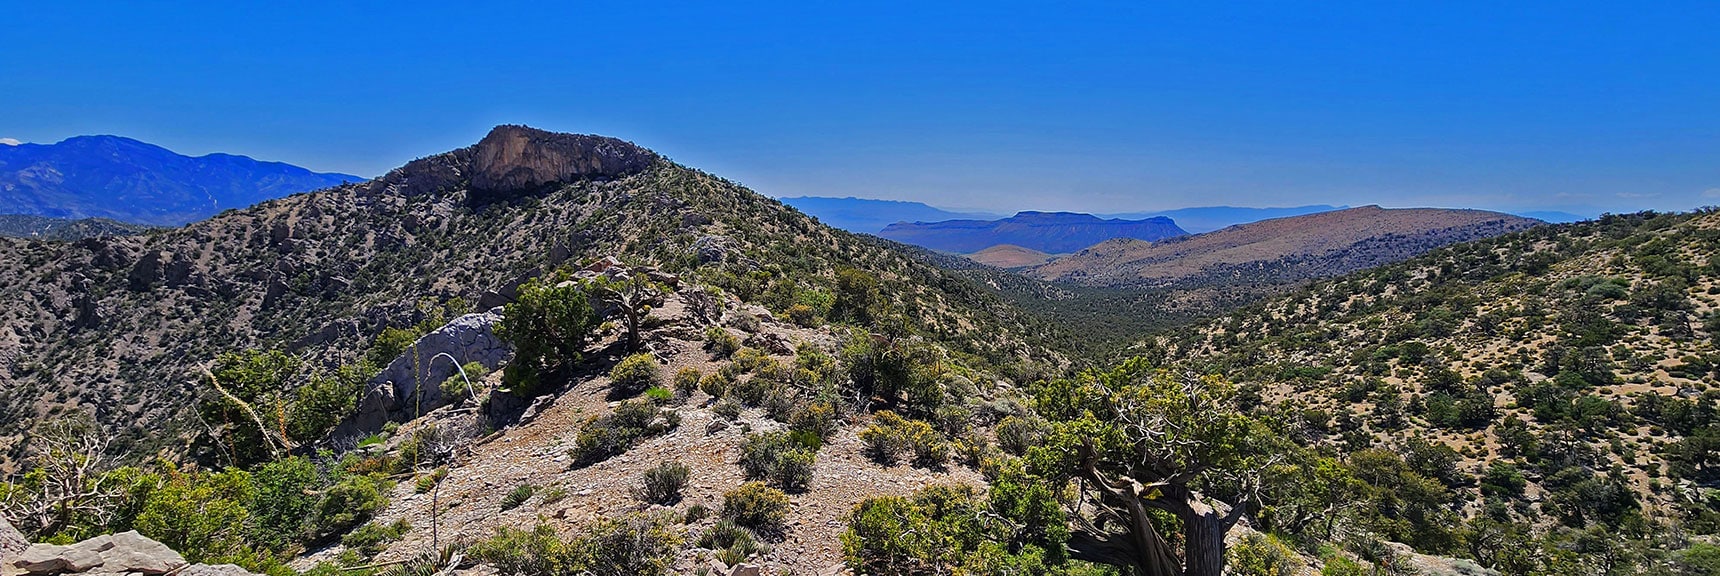 Next Ridgeline Stretch South. Note Lovell Canyon Start Point Landmark Bluff | Mt Wilson to Hidden Peak | Upper Crest Ridgeline | Rainbow Mountain Wilderness, Nevada